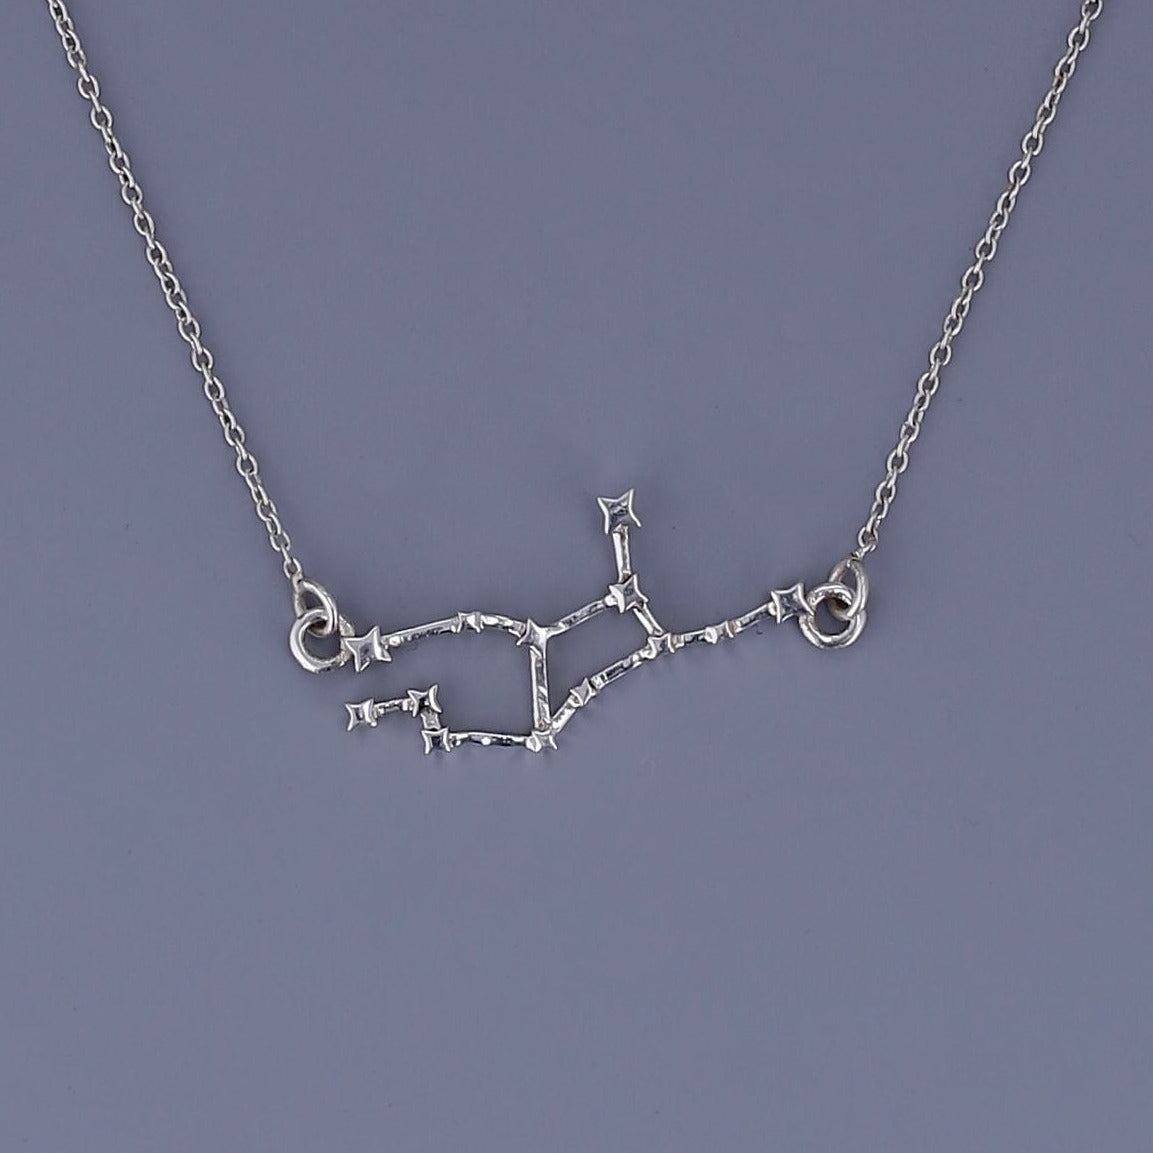 Virgo constellation necklace